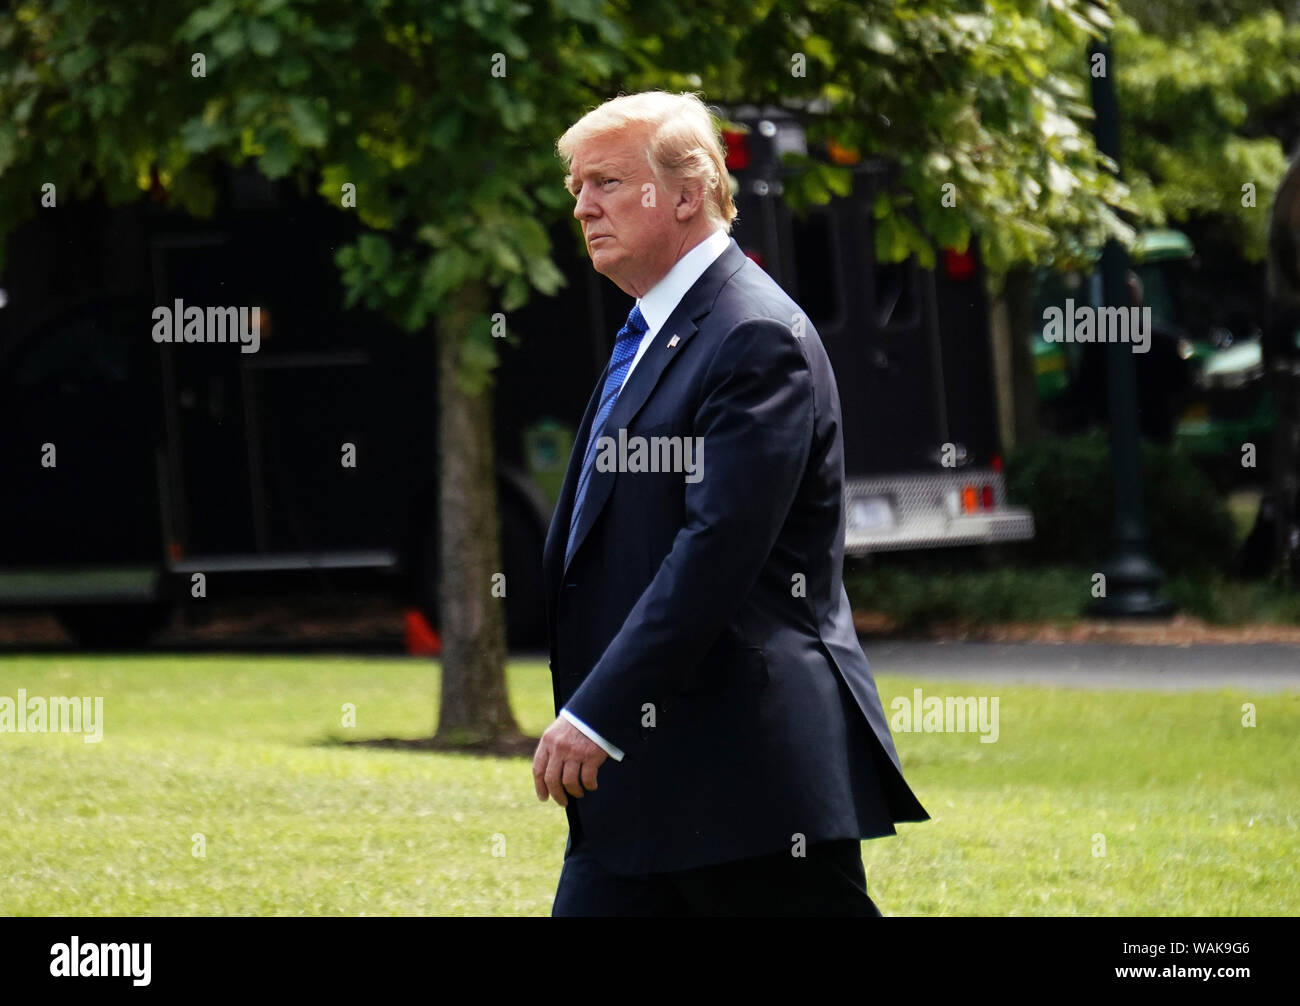 Le 20 juillet 2018. Washington, D.C., le Président Donald Trump promenades du Bureau ovale pour un marin sur son chemin à Bedminster, NJ Banque D'Images